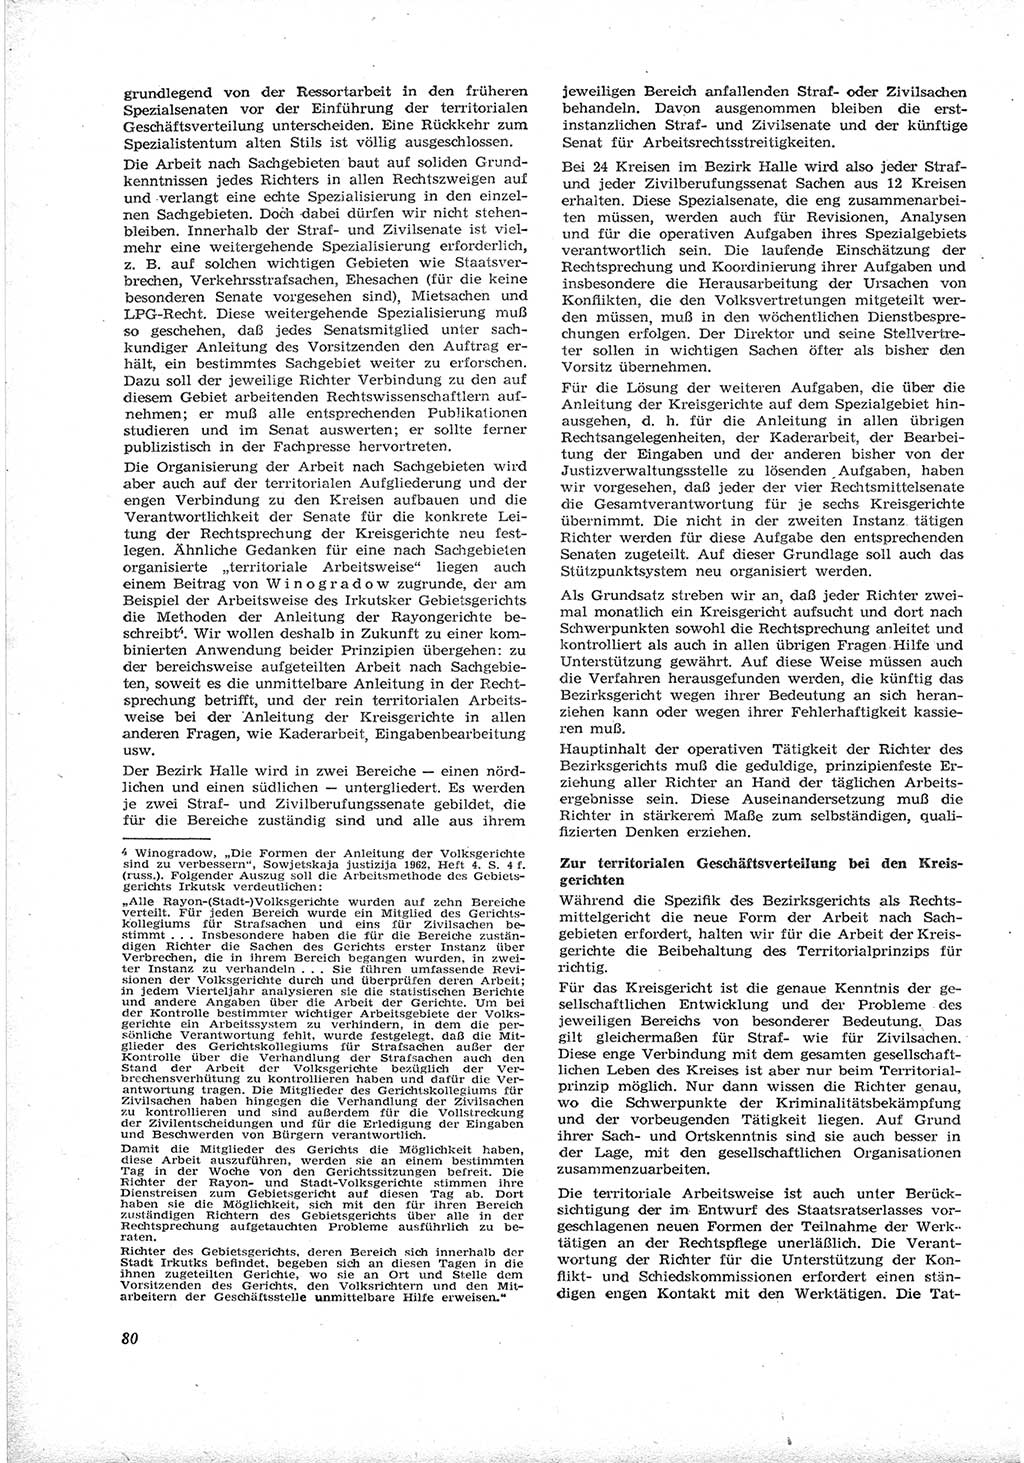 Neue Justiz (NJ), Zeitschrift für Recht und Rechtswissenschaft [Deutsche Demokratische Republik (DDR)], 17. Jahrgang 1963, Seite 80 (NJ DDR 1963, S. 80)